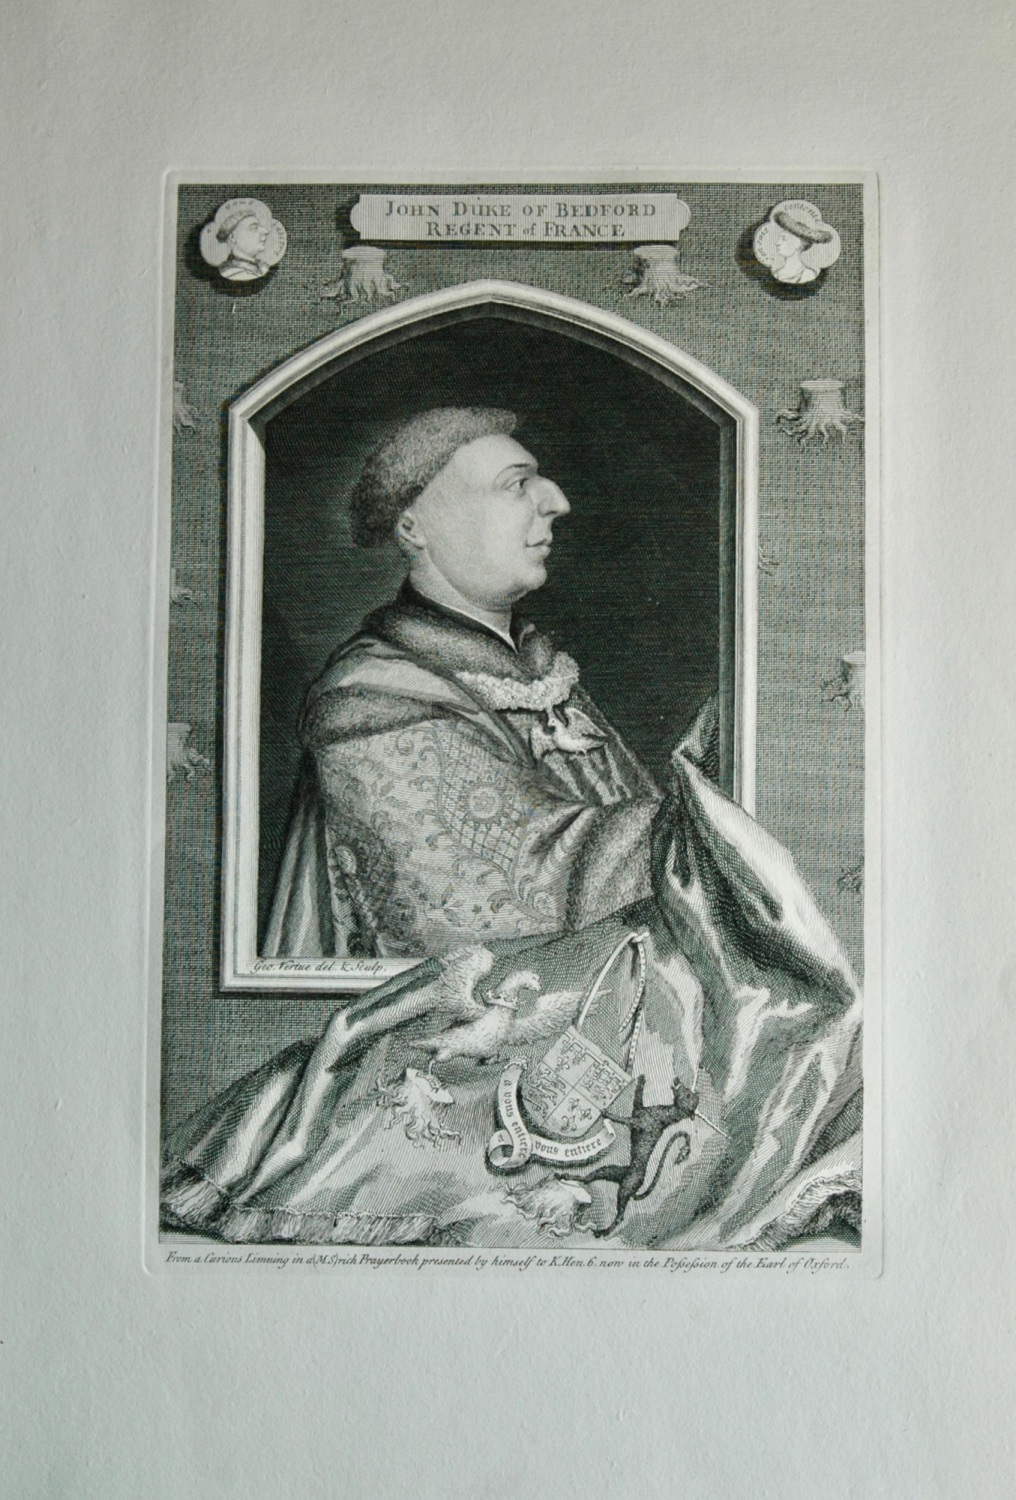 John Duke of Bedford, Regent of France.  1736.